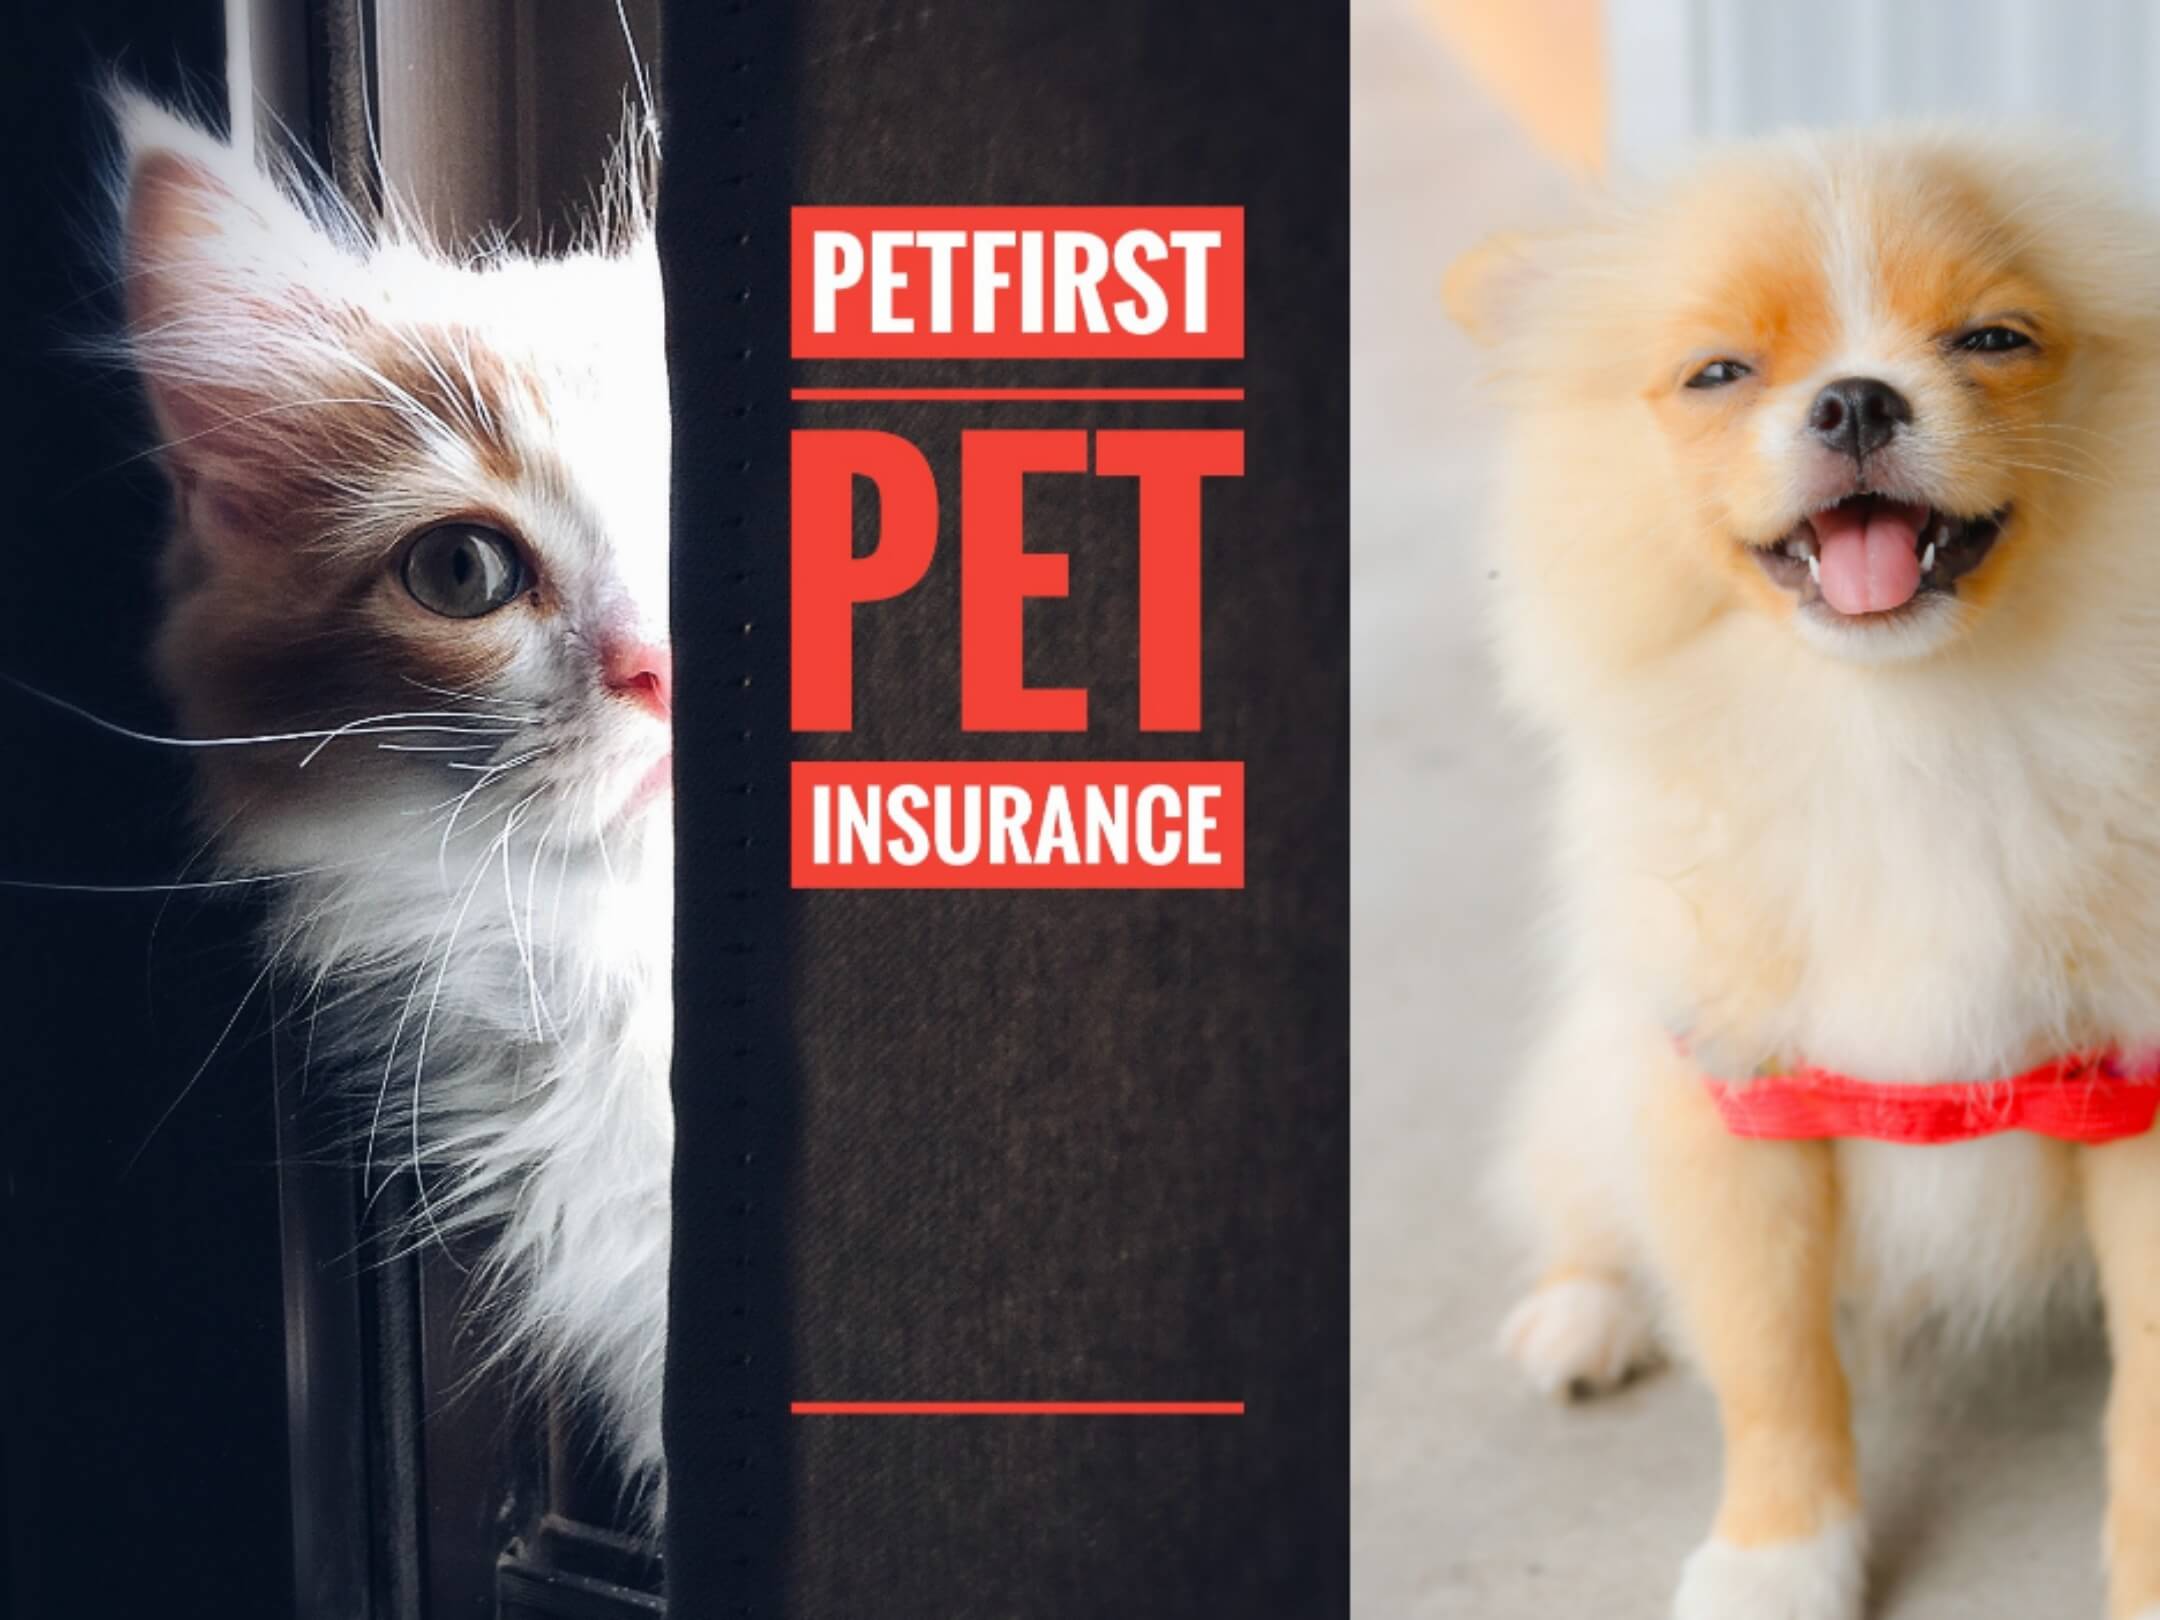 Petfirst pet insurance